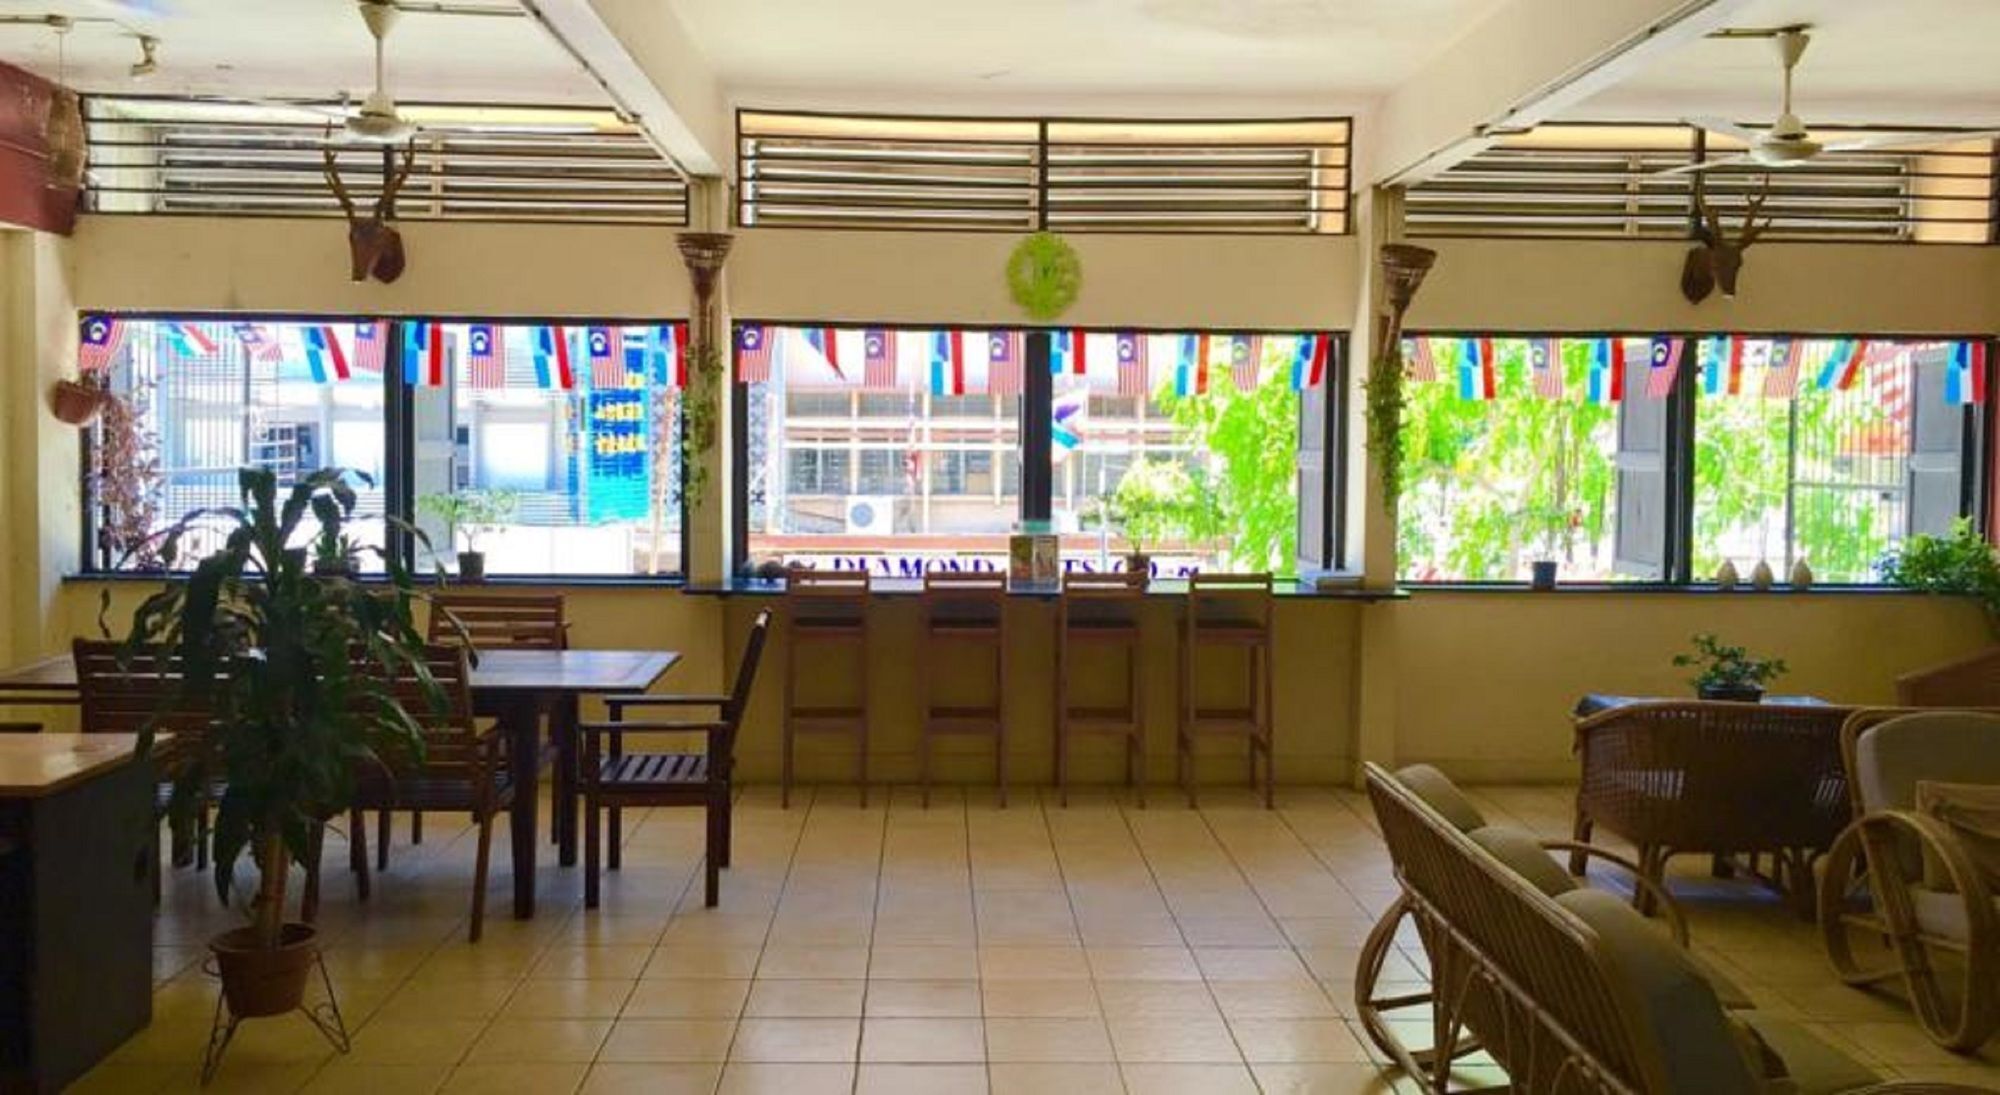 Akinabalu Youth Hostel Kota Kinabalu Zewnętrze zdjęcie